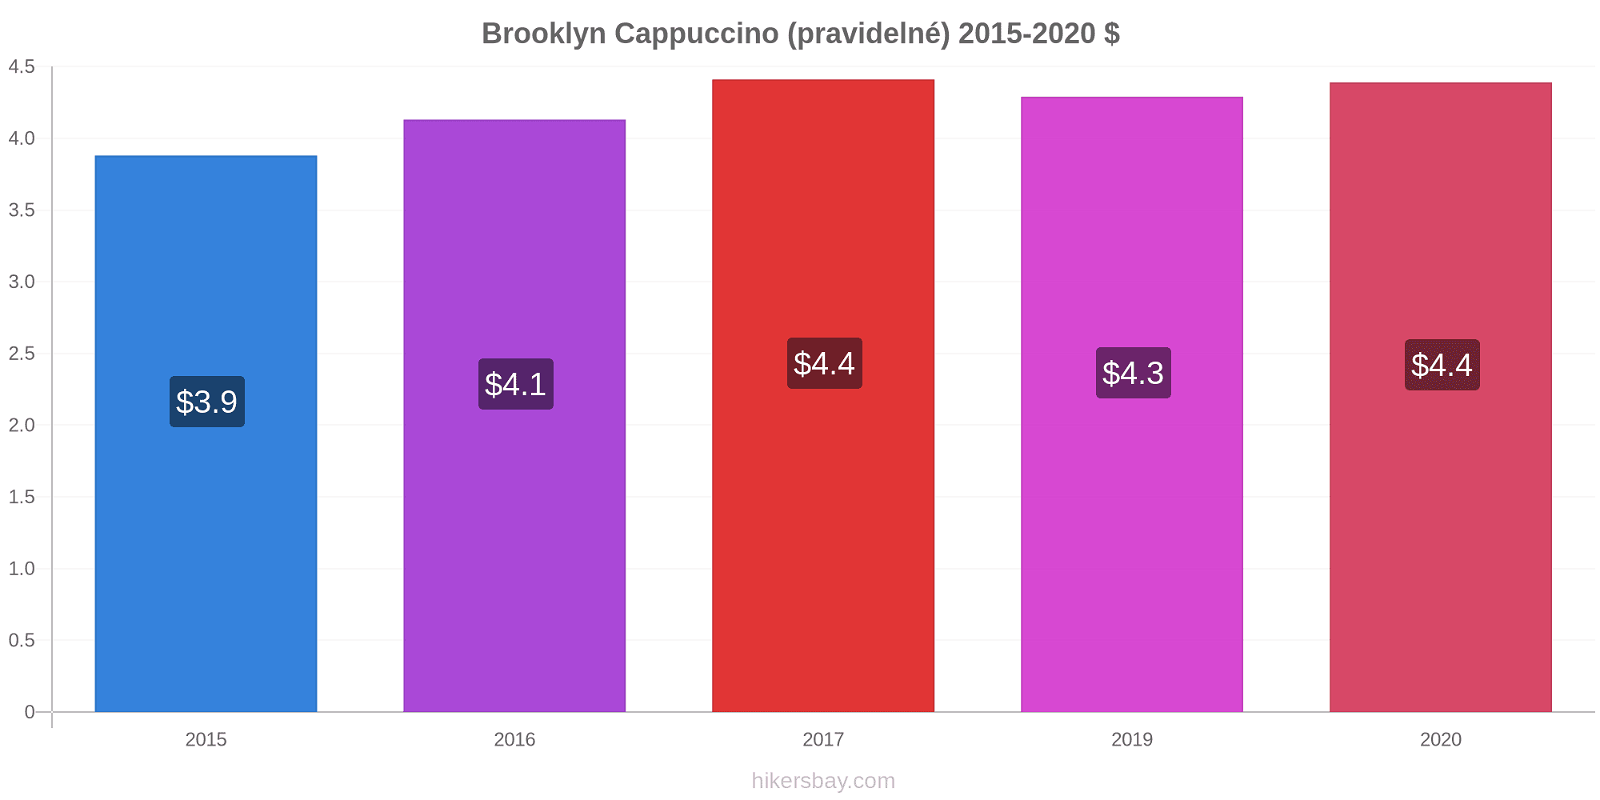 Brooklyn změny cen Cappuccino (pravidelné) hikersbay.com